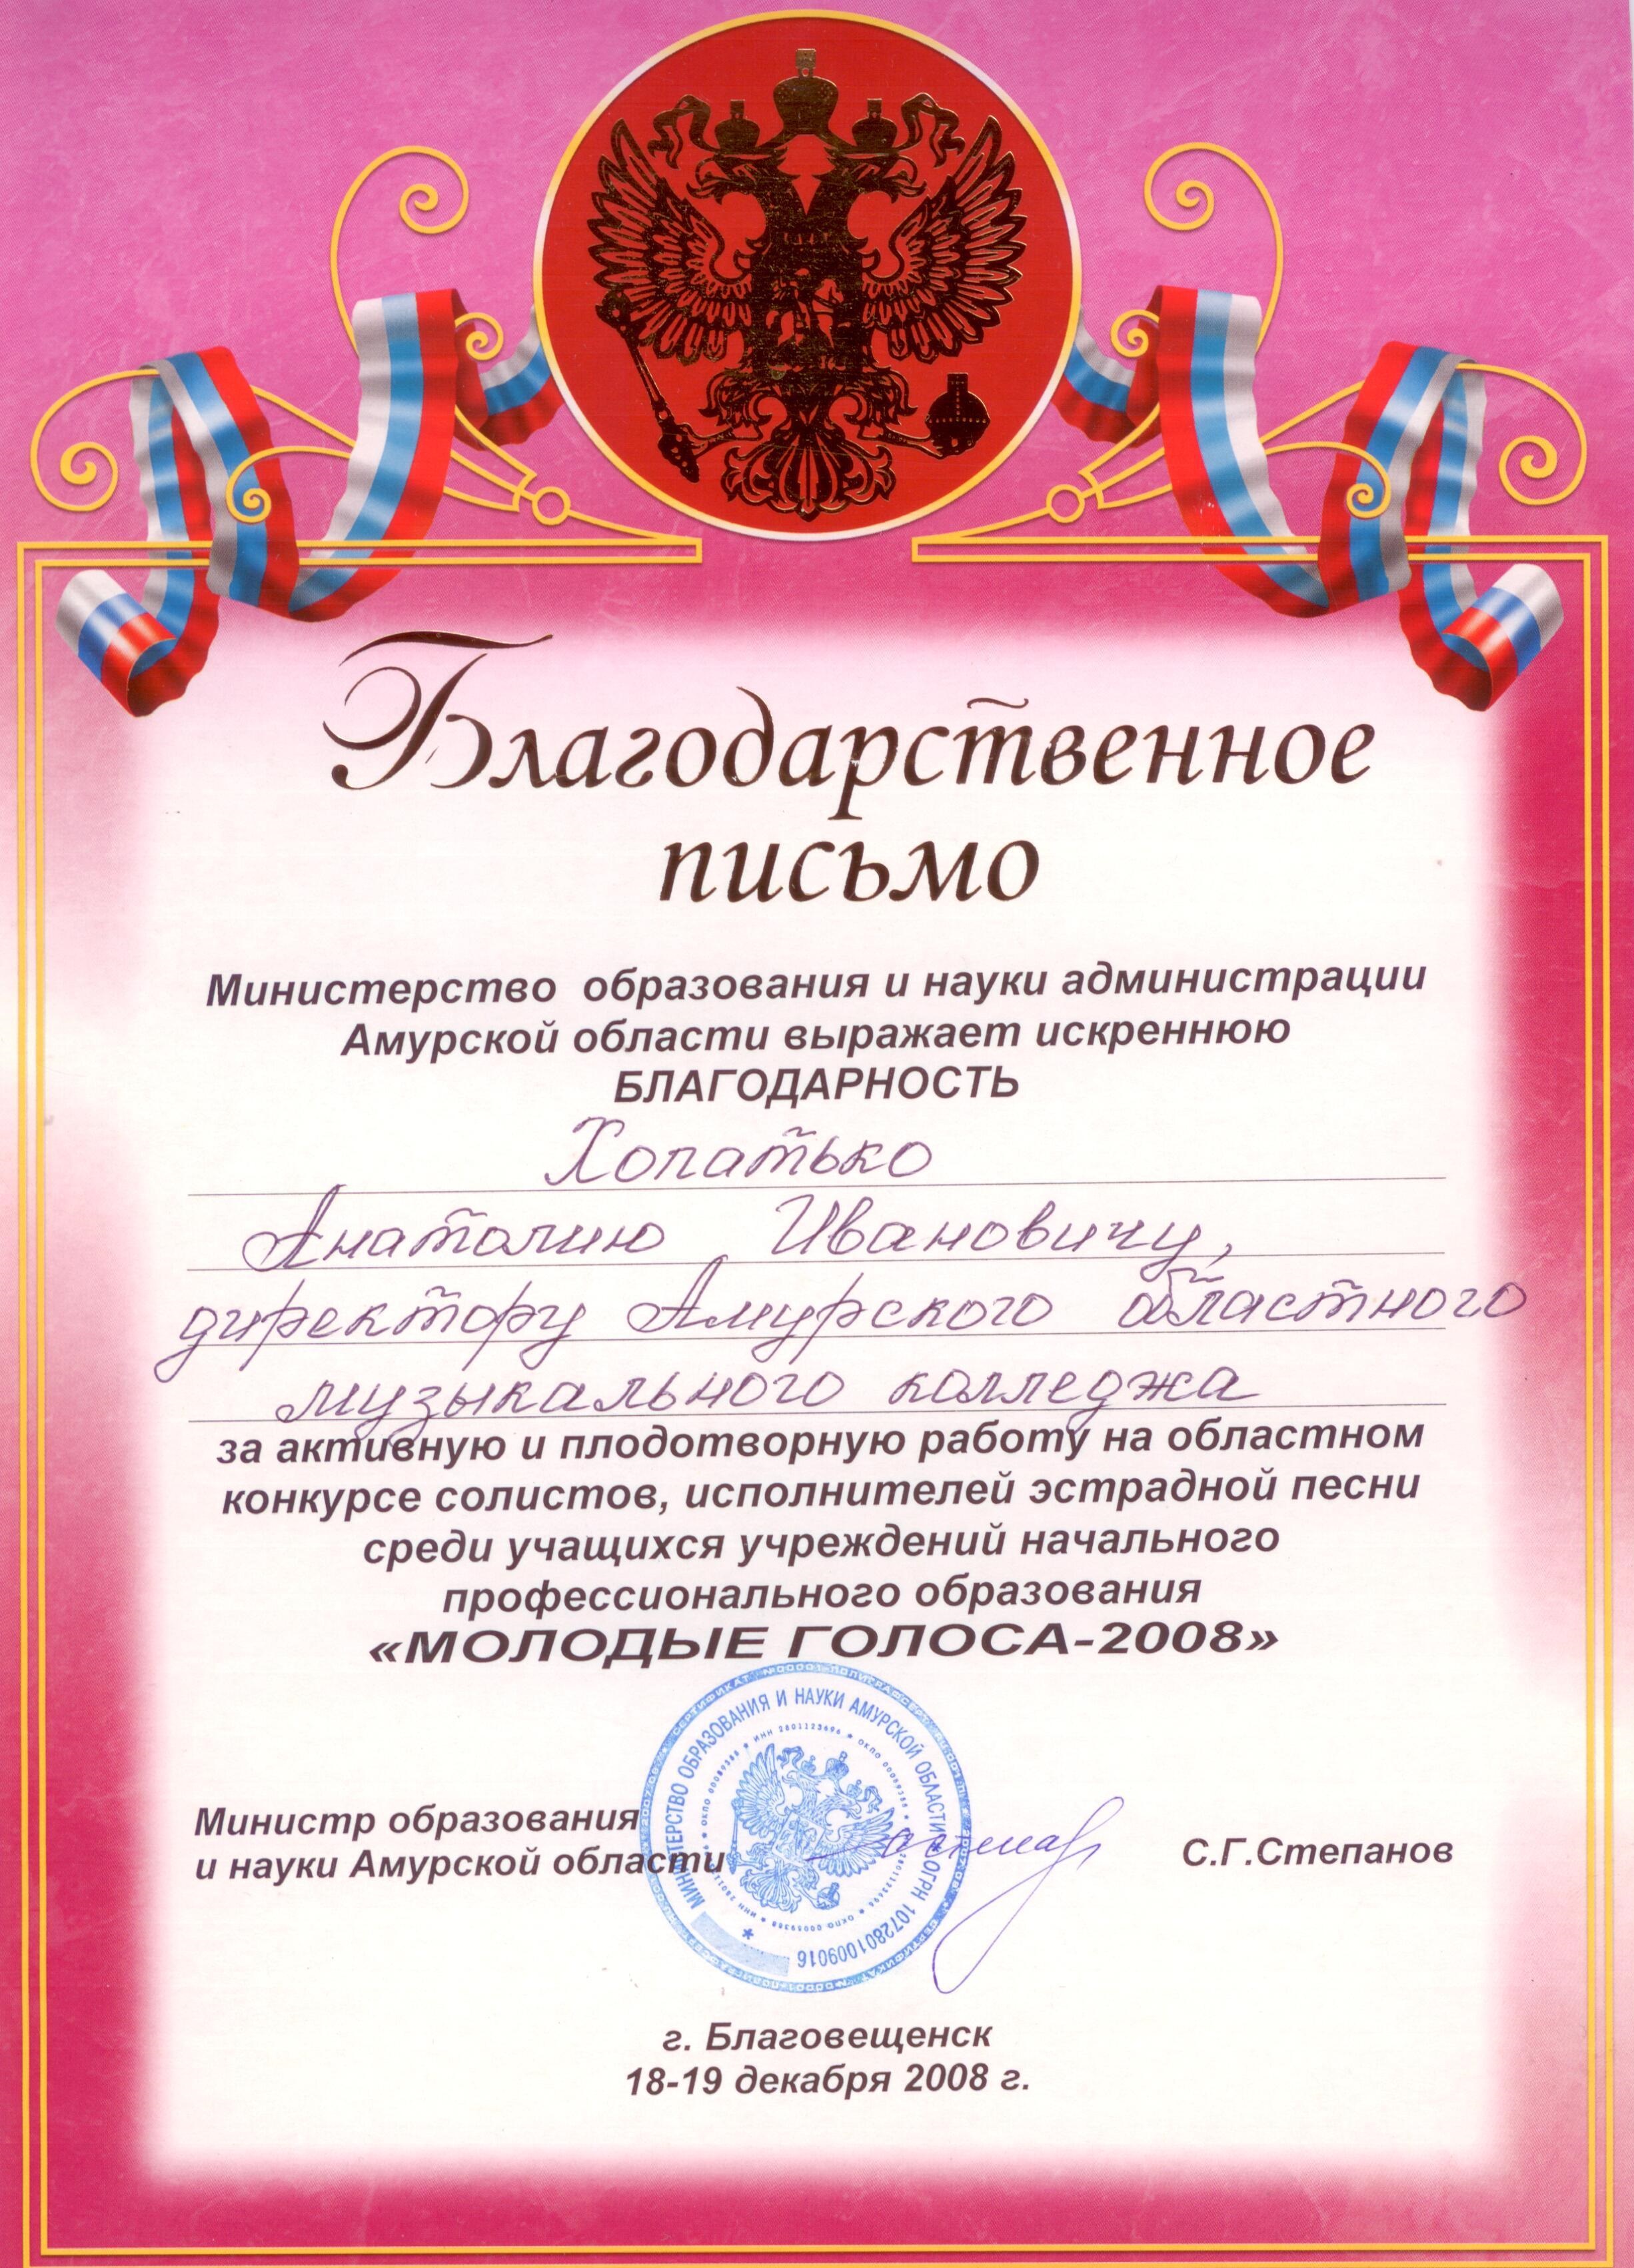 Благодарственное письмо от Министерства образования и науки администрации Амурской области